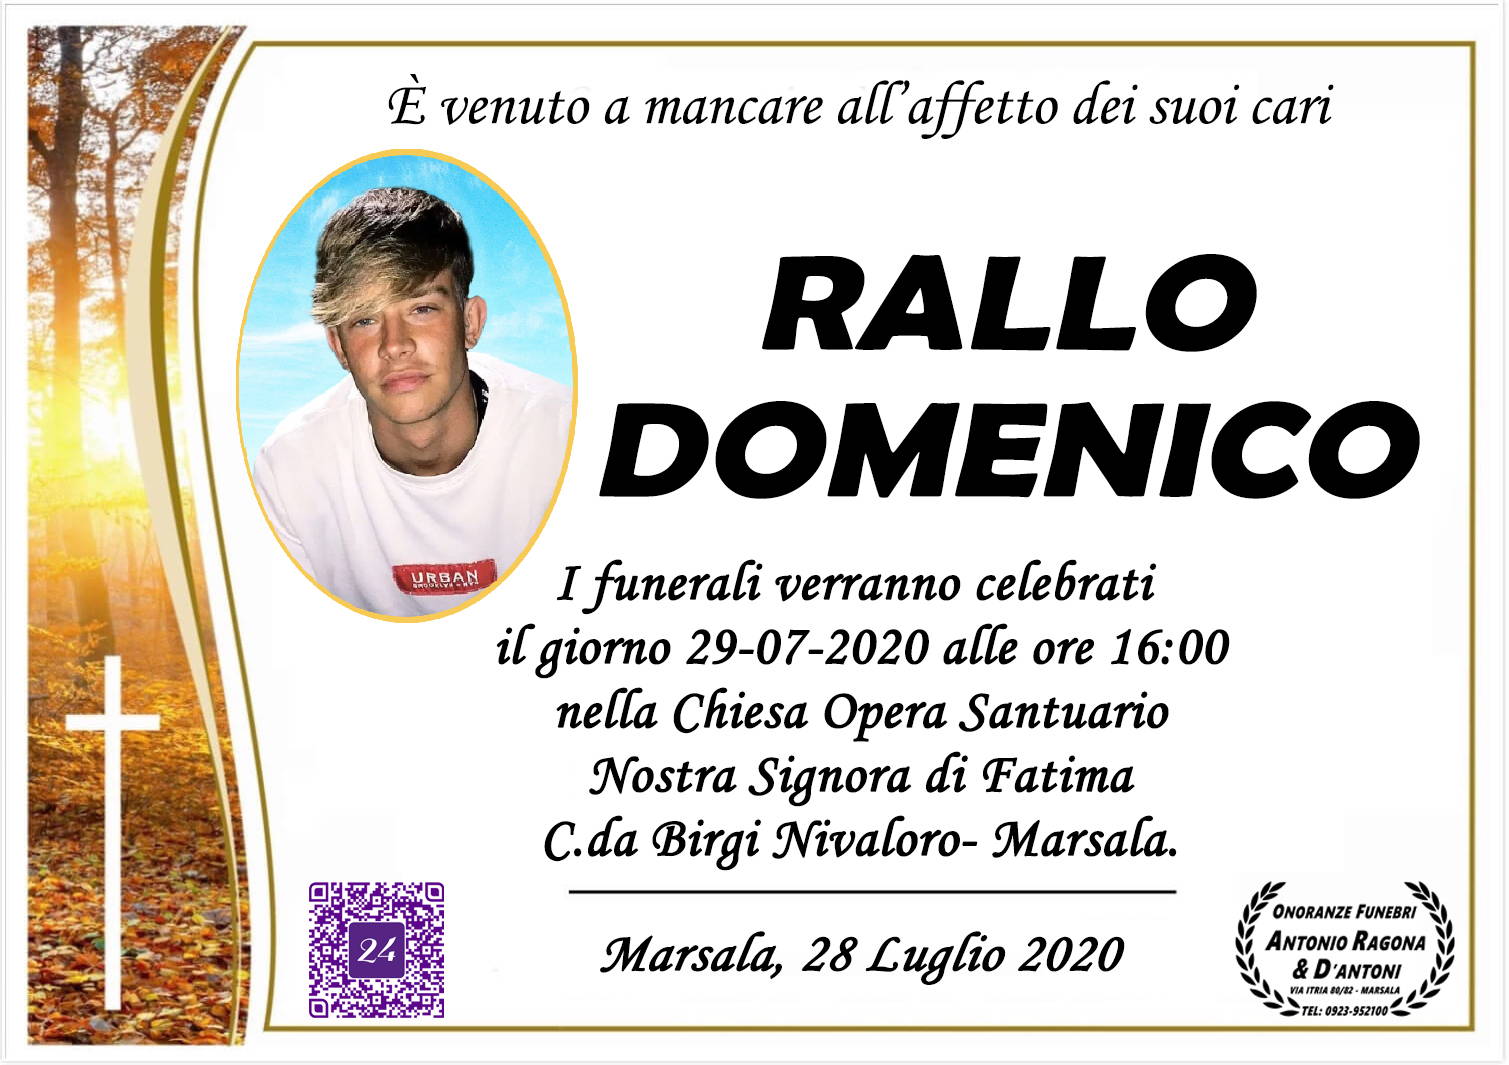 Domenico Rallo